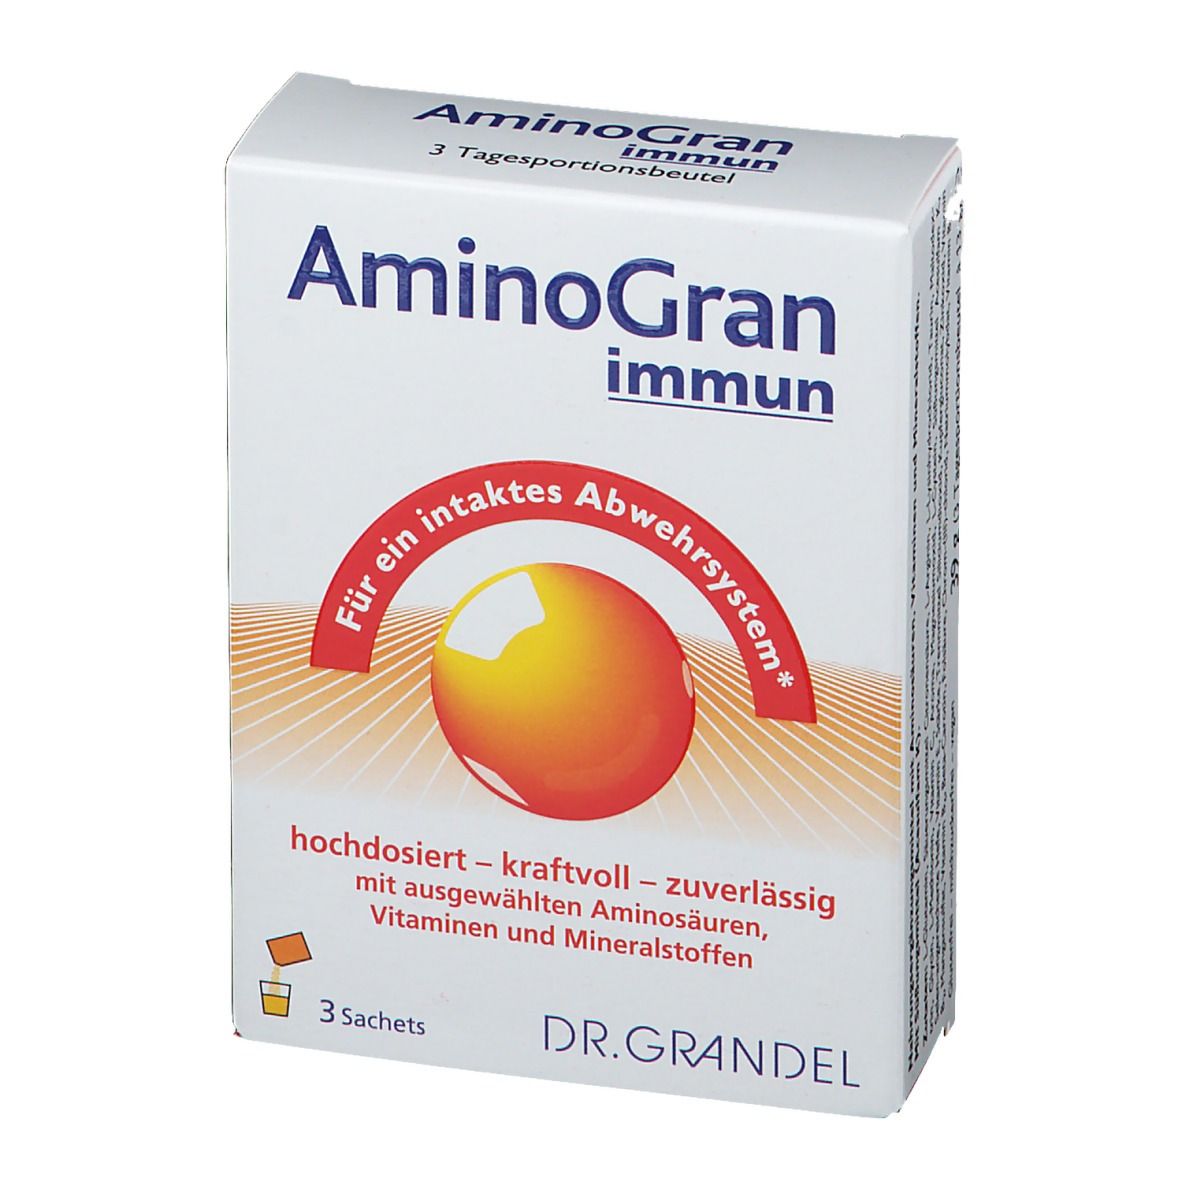 Dr. Grandel AminoGran immun